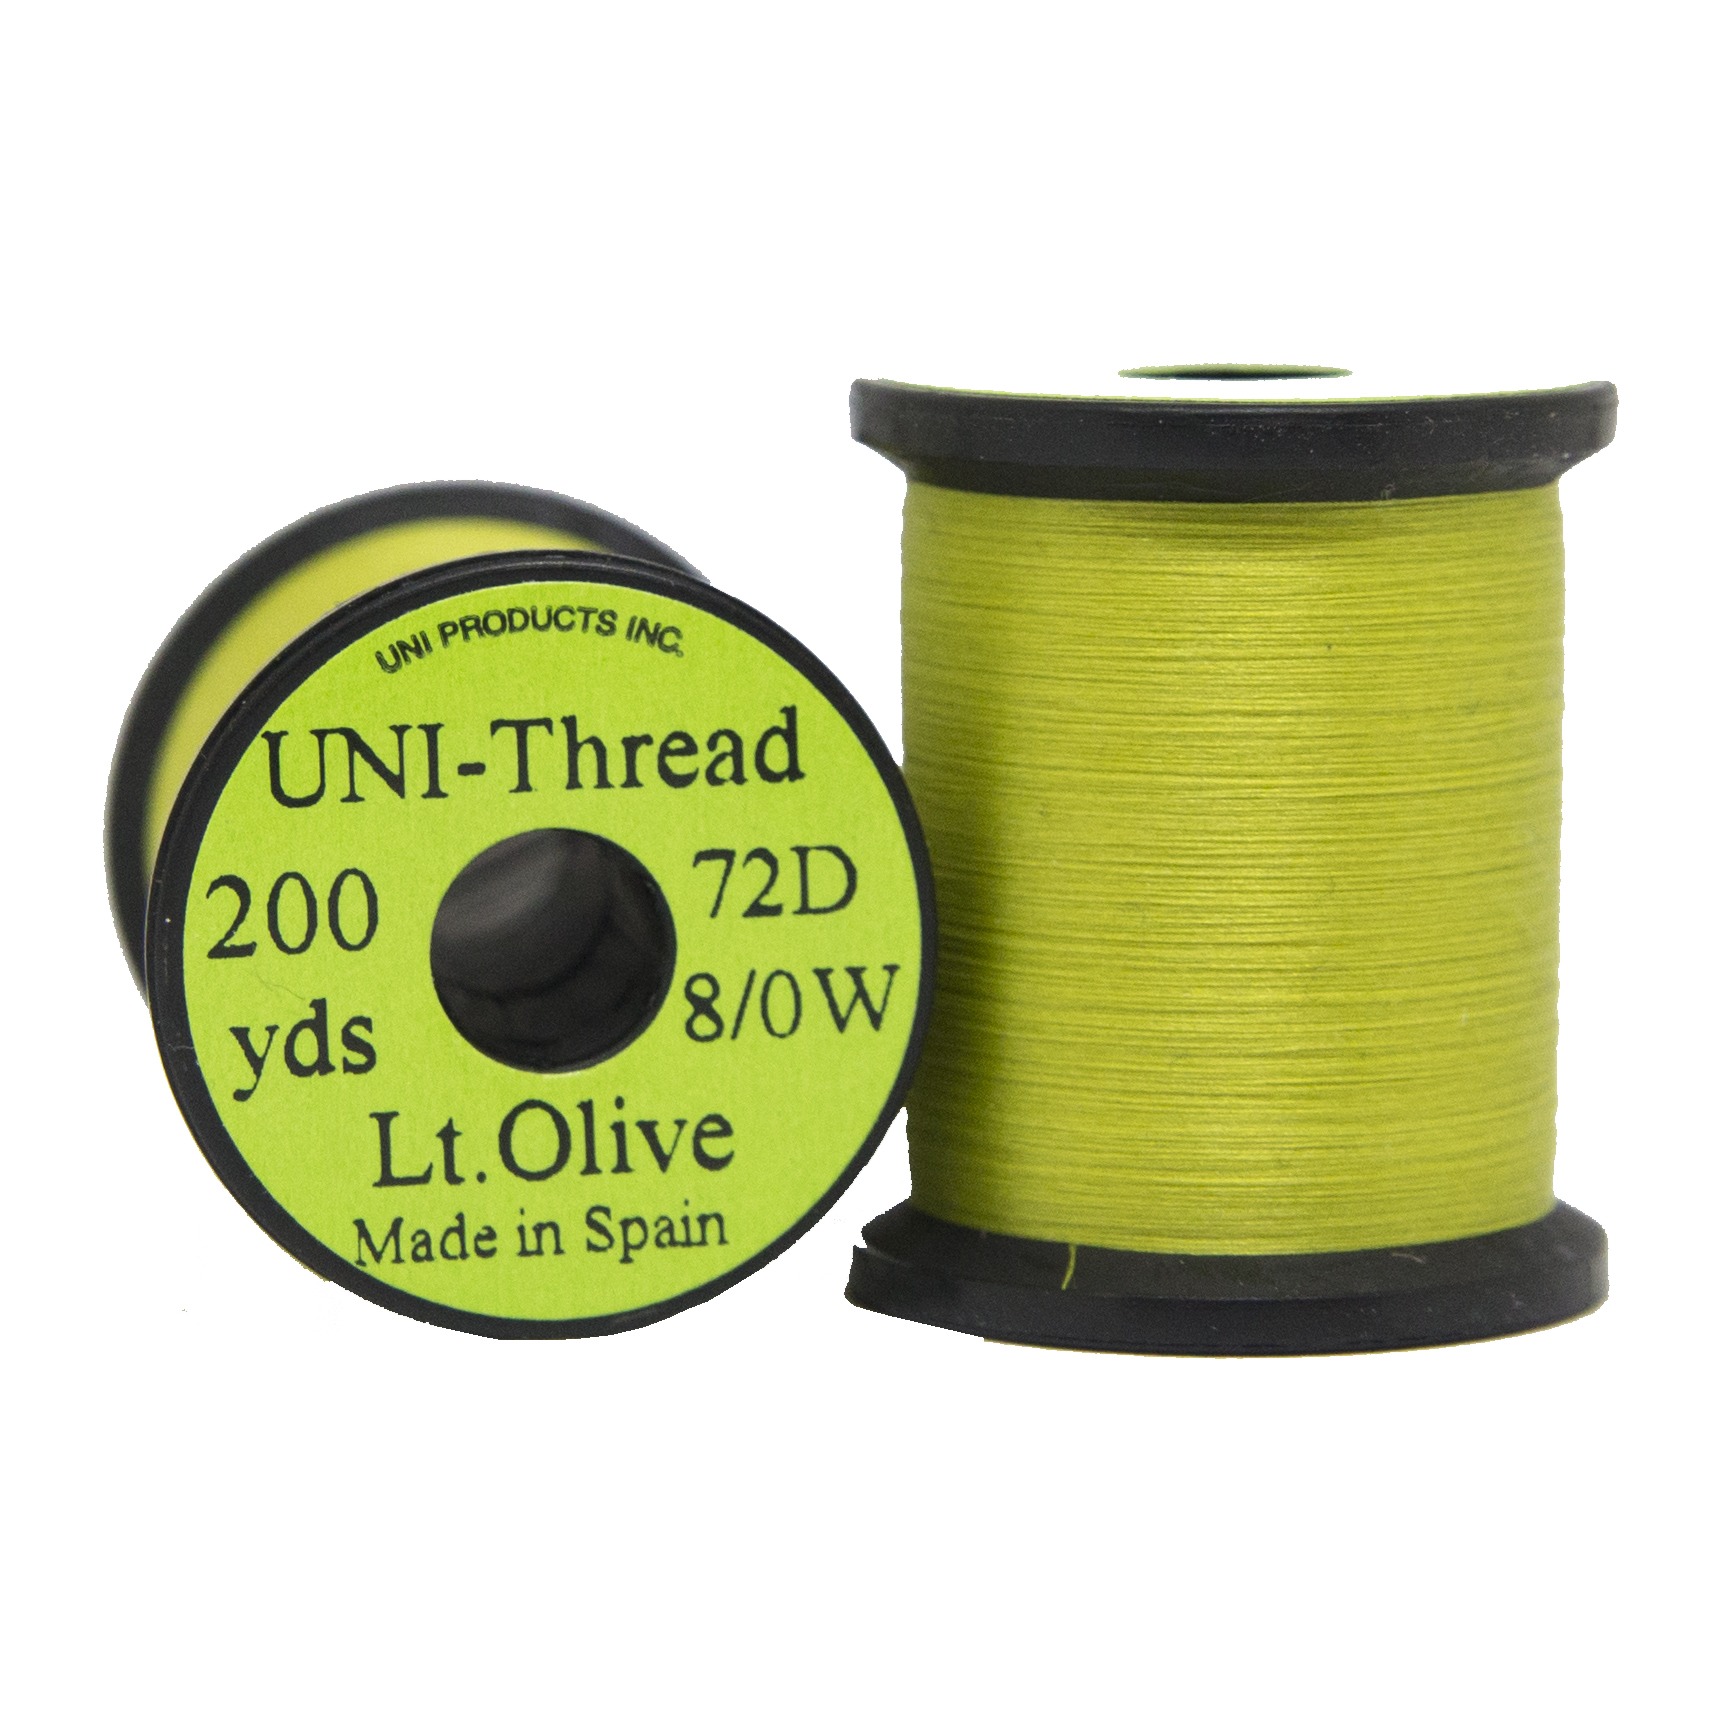 UNI Thread 8/0 200yds - Light olive